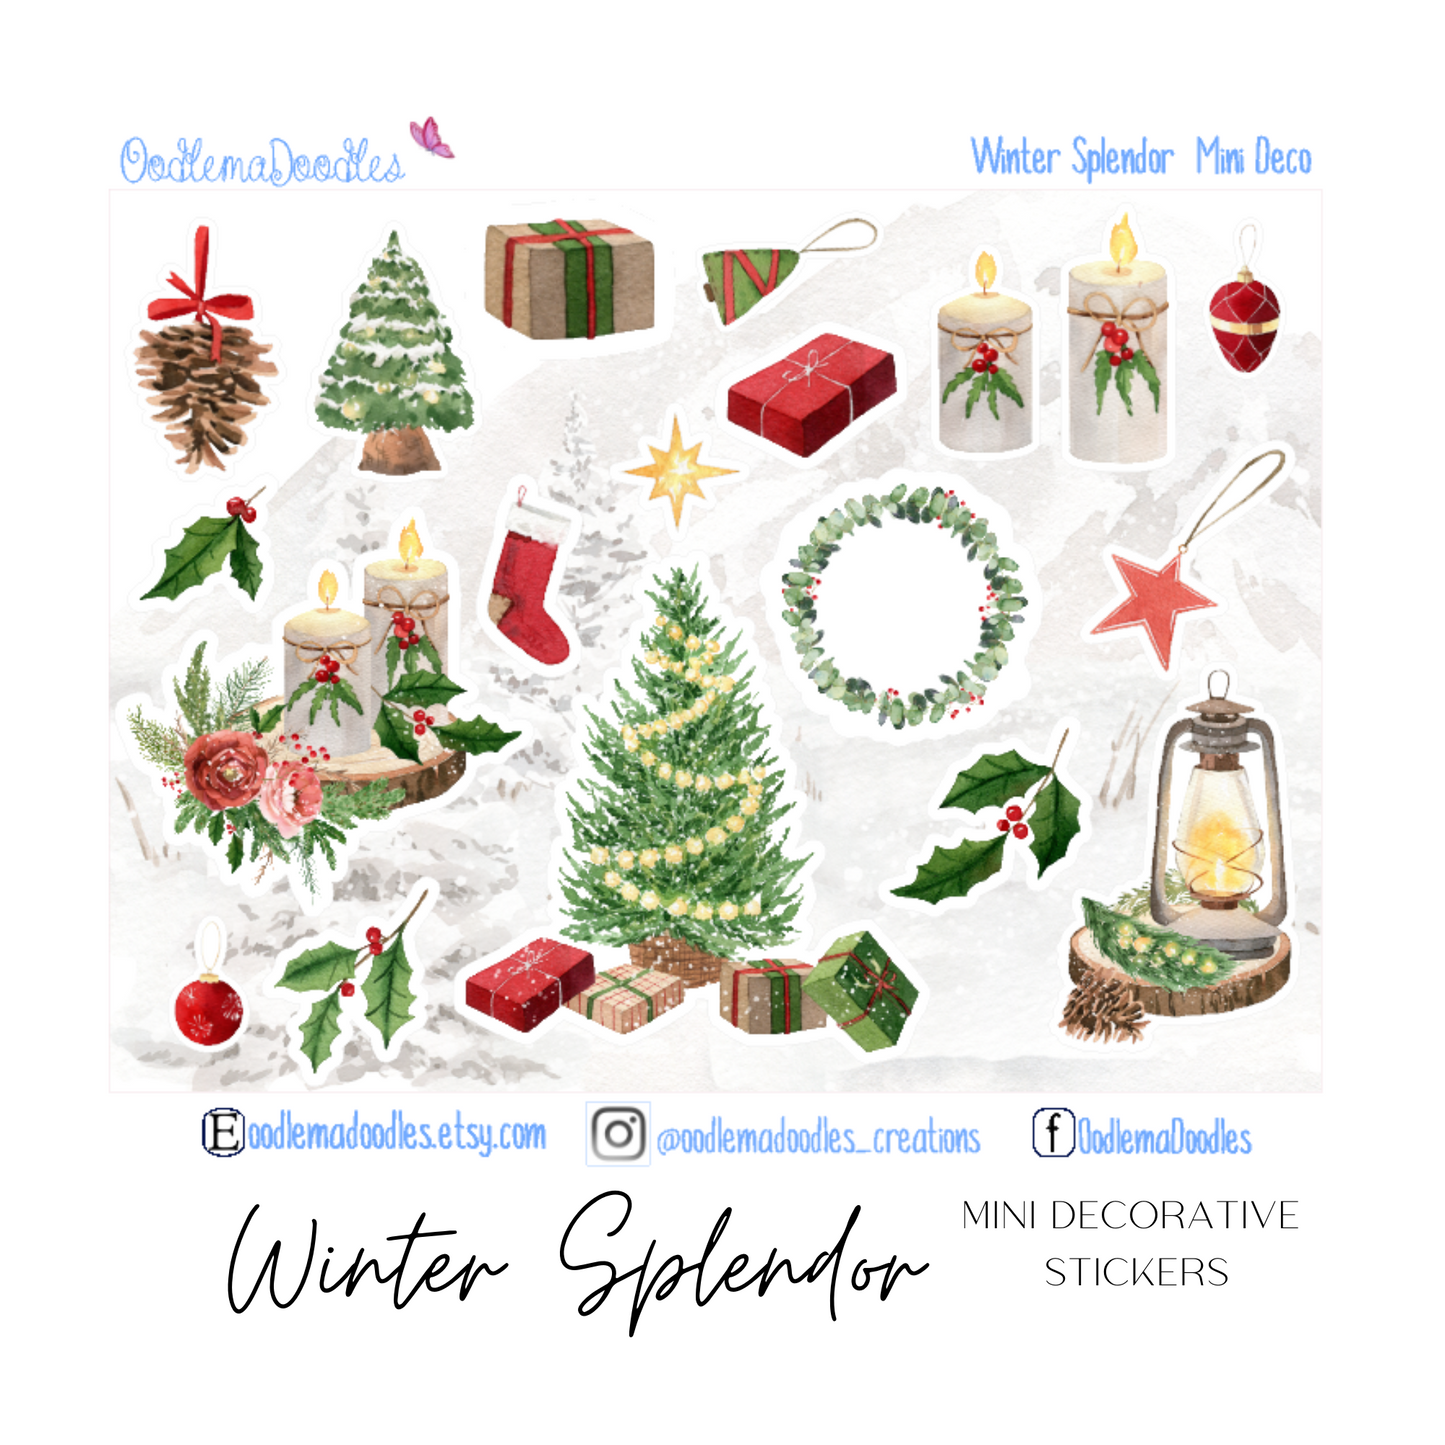 Winter Splendor Mini Decorative Stickers